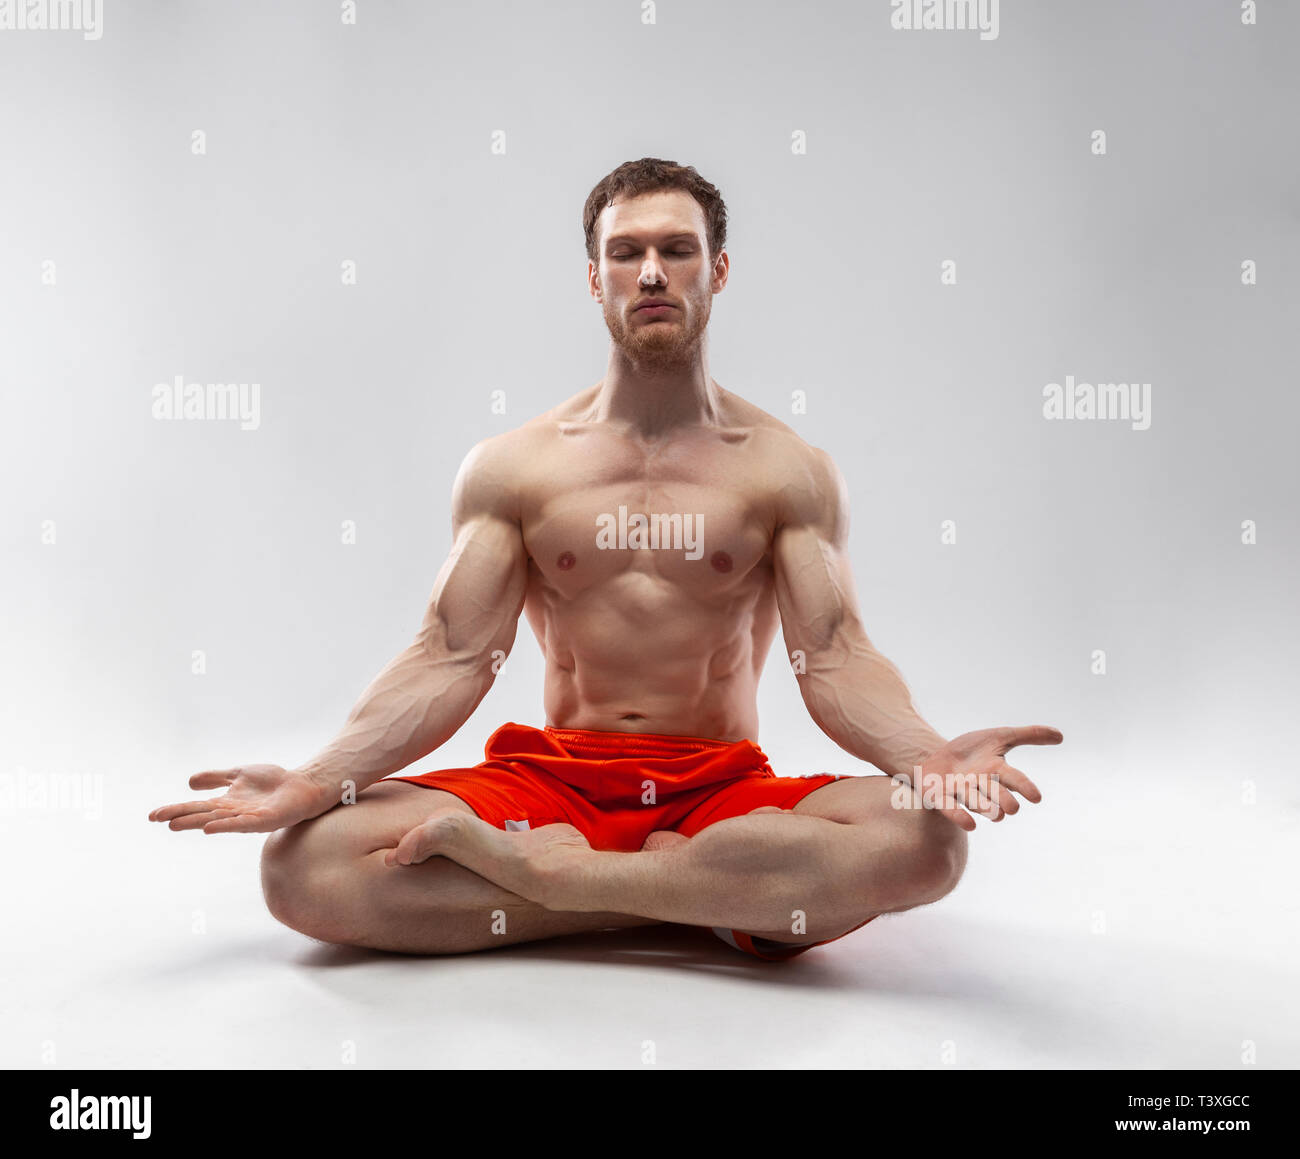 Un hombre con sus ojos cerrados y el cuerpo musculoso sentado en la postura del loto Foto de stock